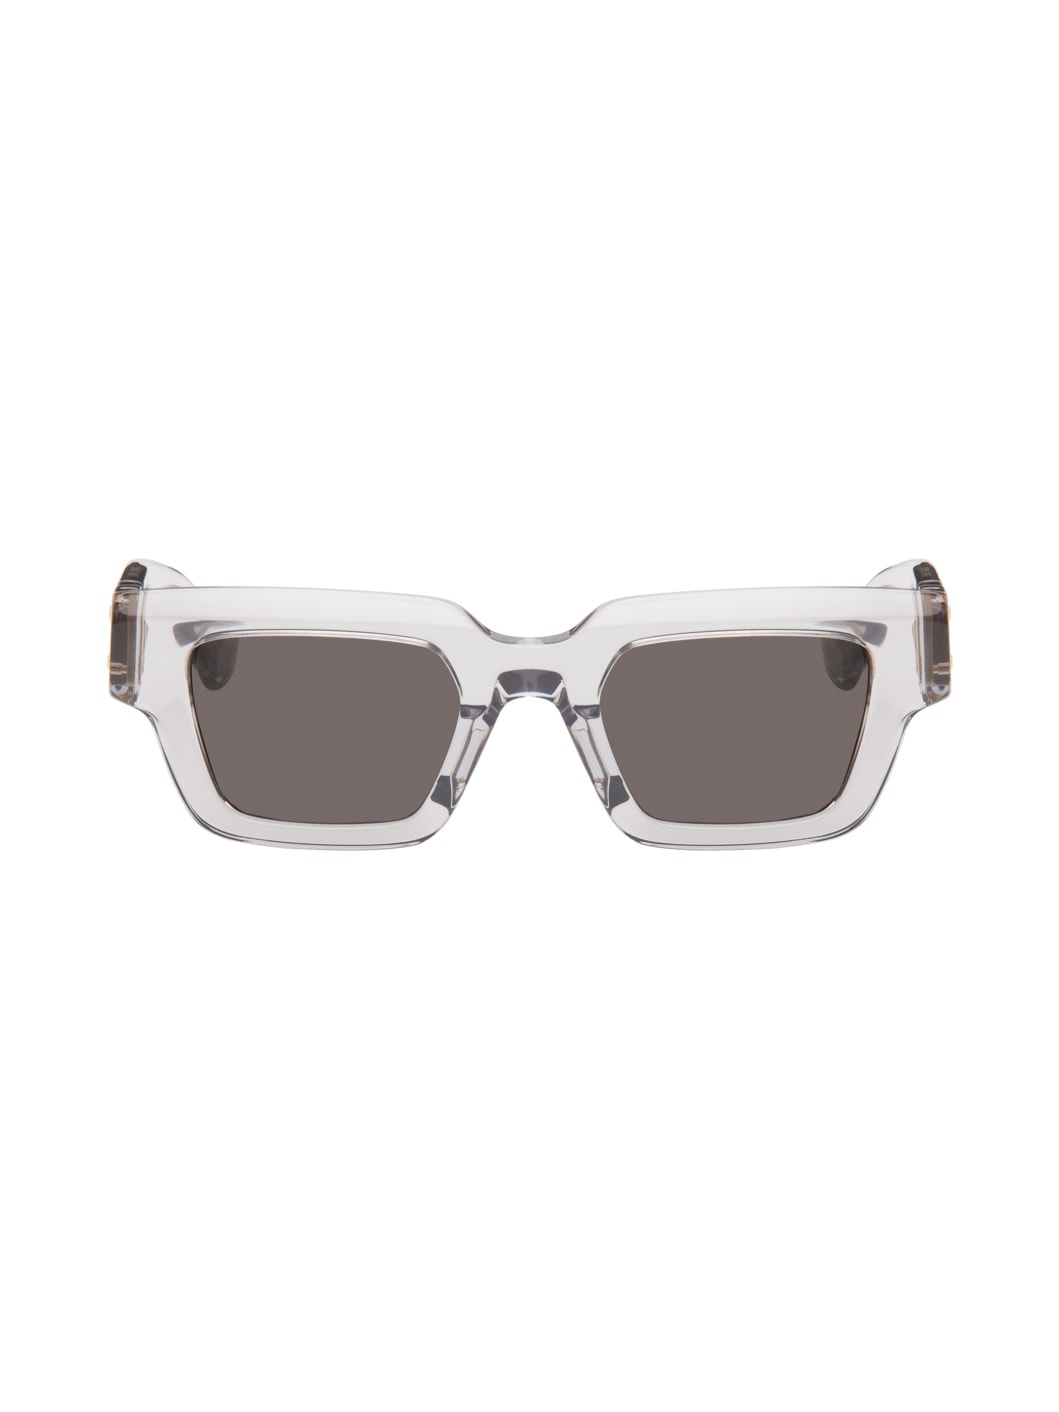 Gray Hinge Sunglasses - 1